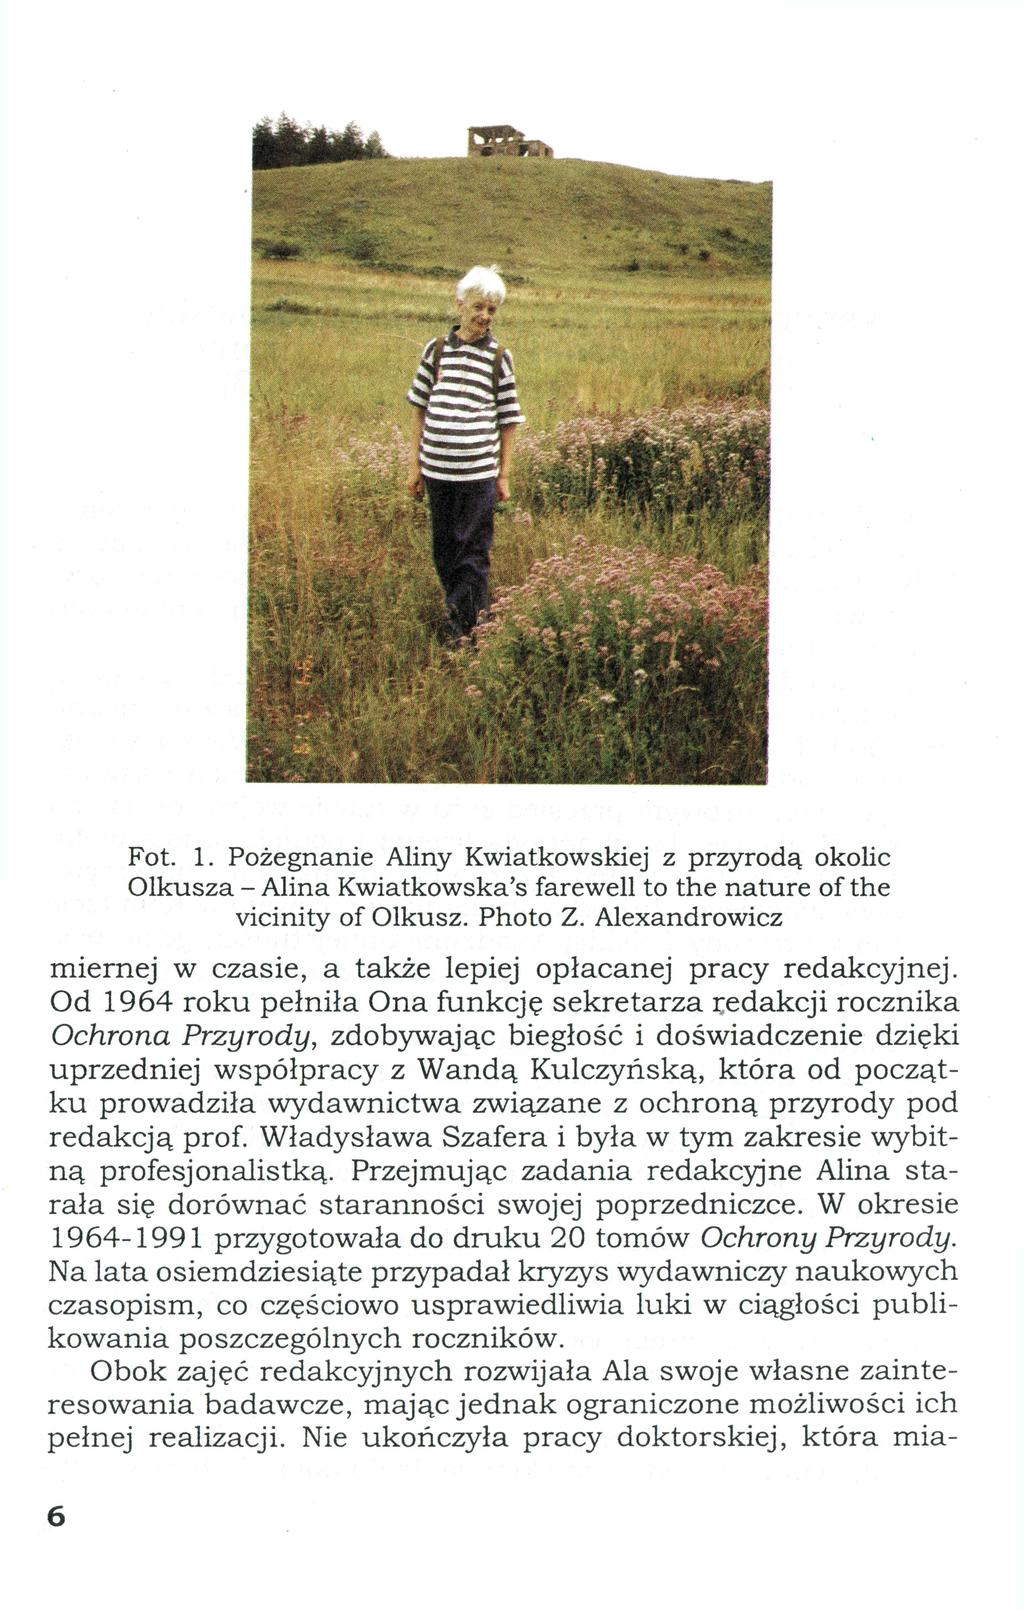 Fot. 1. Pożegnanie Aliny Kwiatkowskiej z przyrodą okolic Olkusza - Alina Kwiatkowska's farewell to the nature of the vicinity of Olkusz. Photo Z.